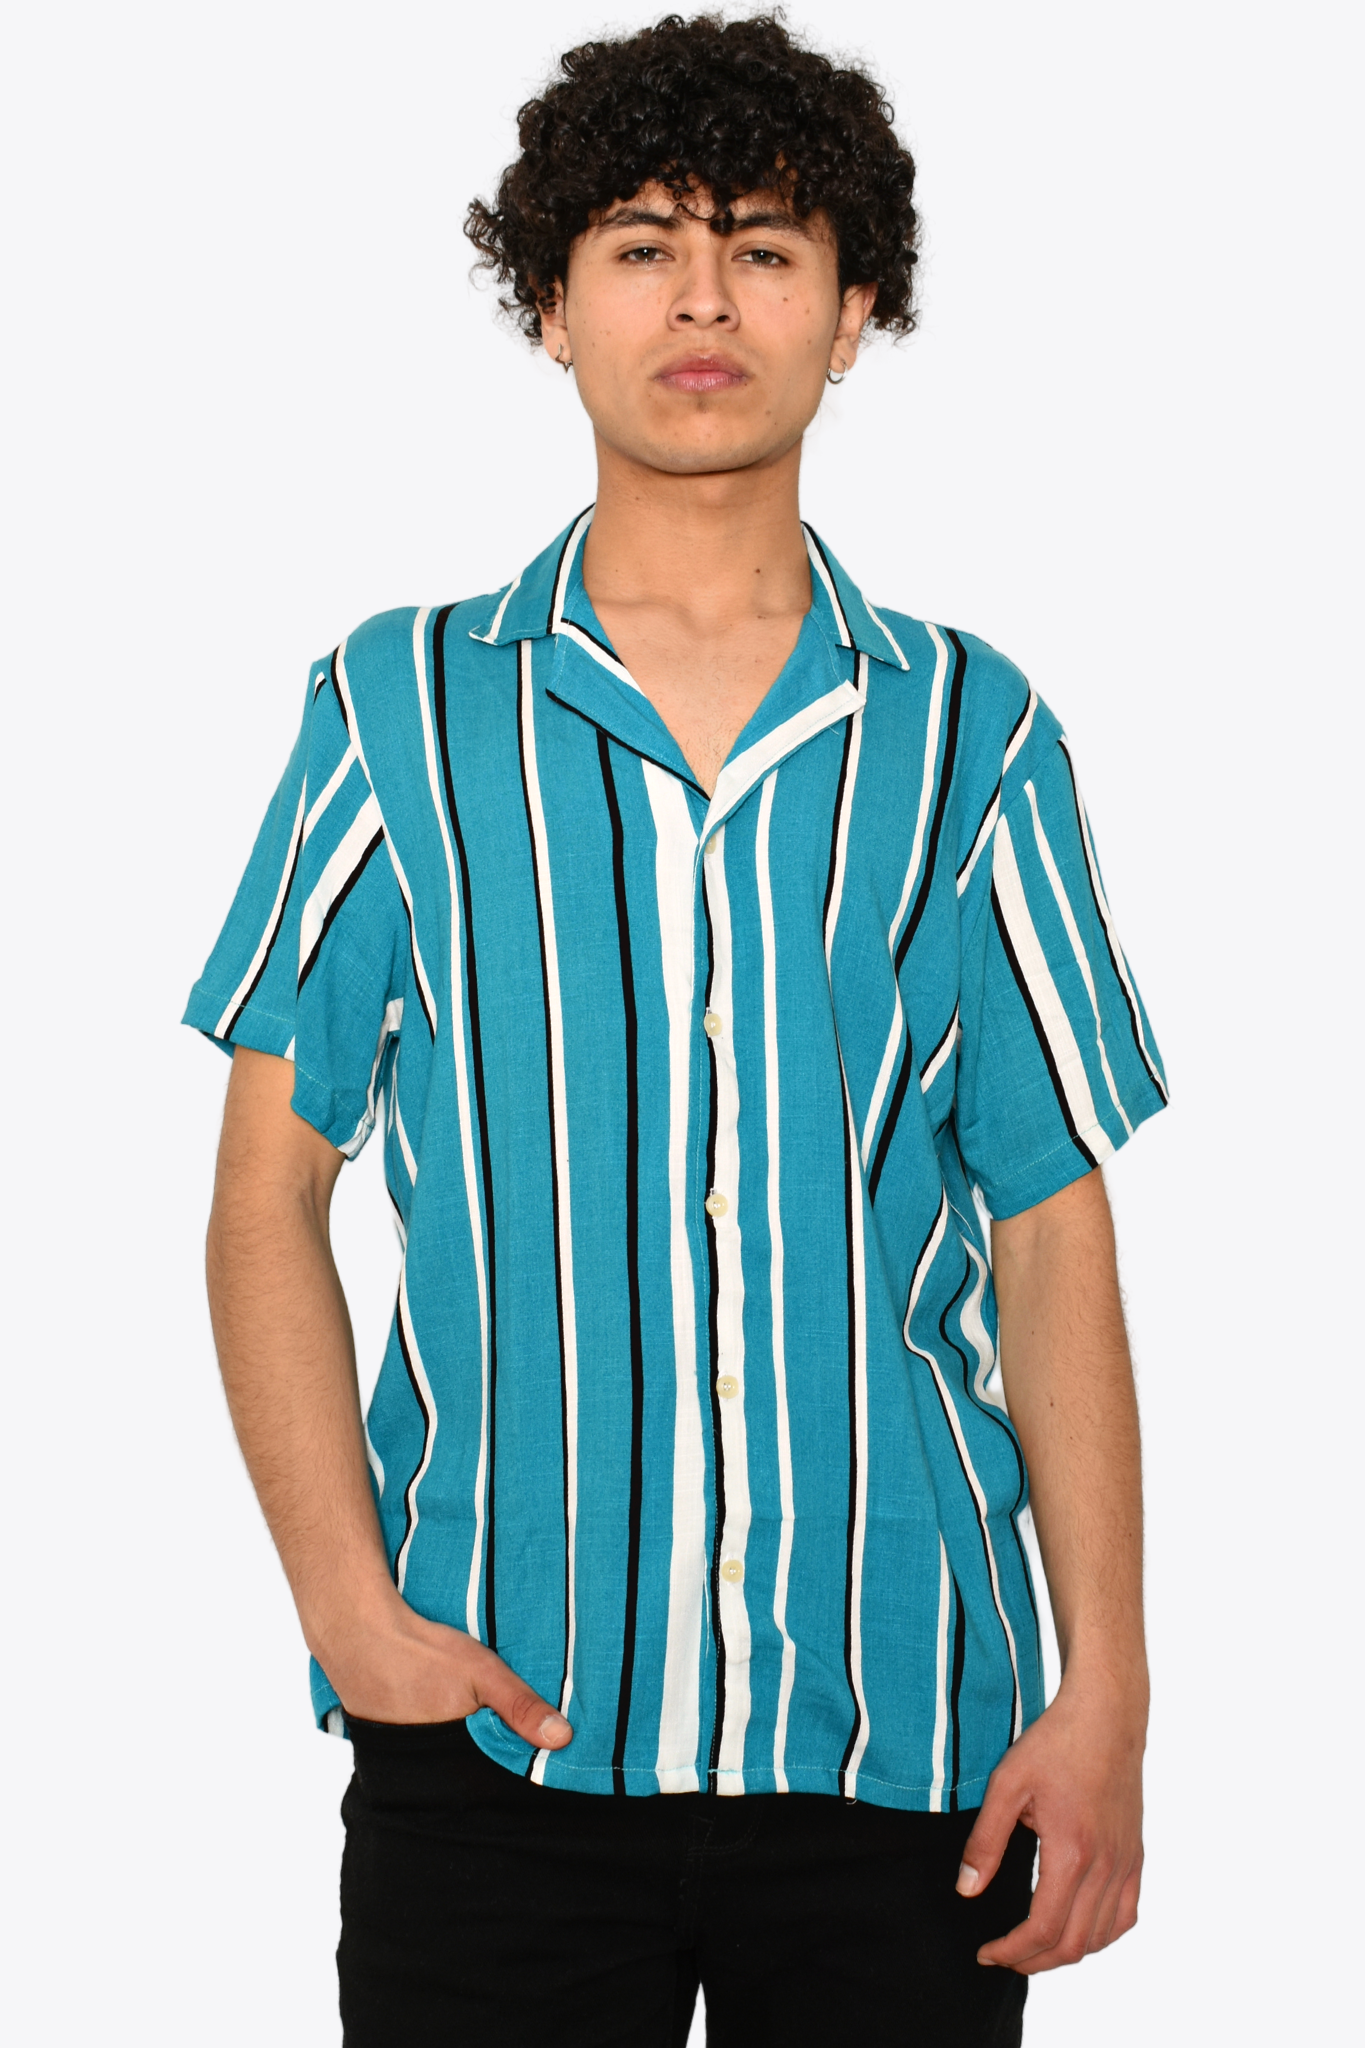 Camisa Cuello Cubano Tricolor Azul/Blanco/Negro